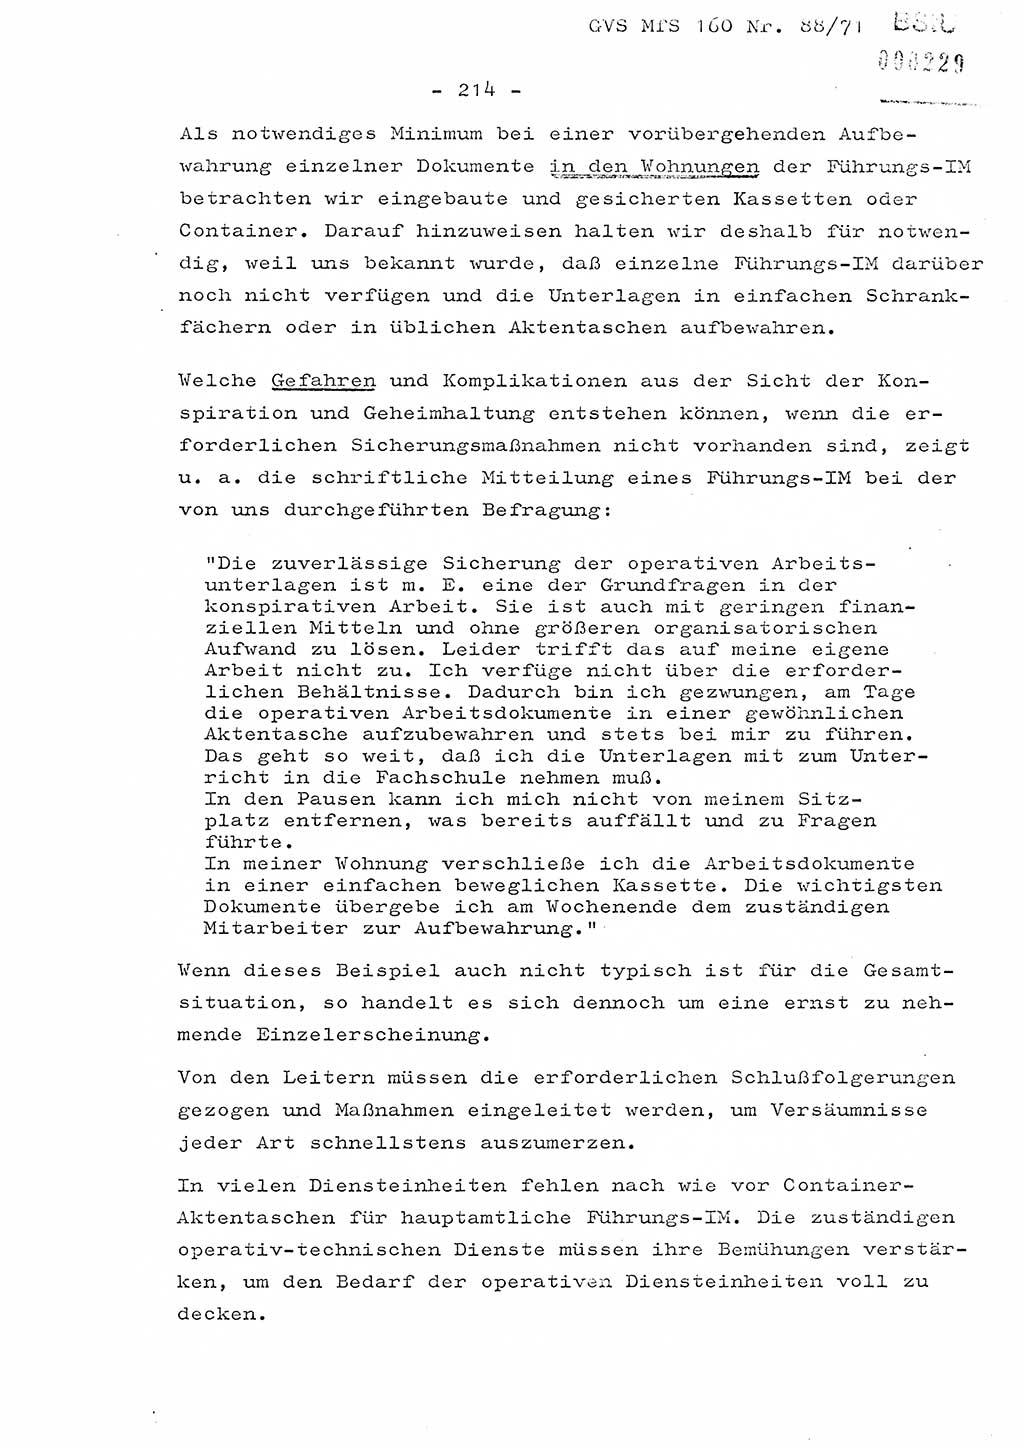 Dissertation Oberstleutnant Josef Schwarz (BV Schwerin), Major Fritz Amm (JHS), Hauptmann Peter Gräßler (JHS), Ministerium für Staatssicherheit (MfS) [Deutsche Demokratische Republik (DDR)], Juristische Hochschule (JHS), Geheime Verschlußsache (GVS) 160-88/71, Potsdam 1972, Seite 214 (Diss. MfS DDR JHS GVS 160-88/71 1972, S. 214)